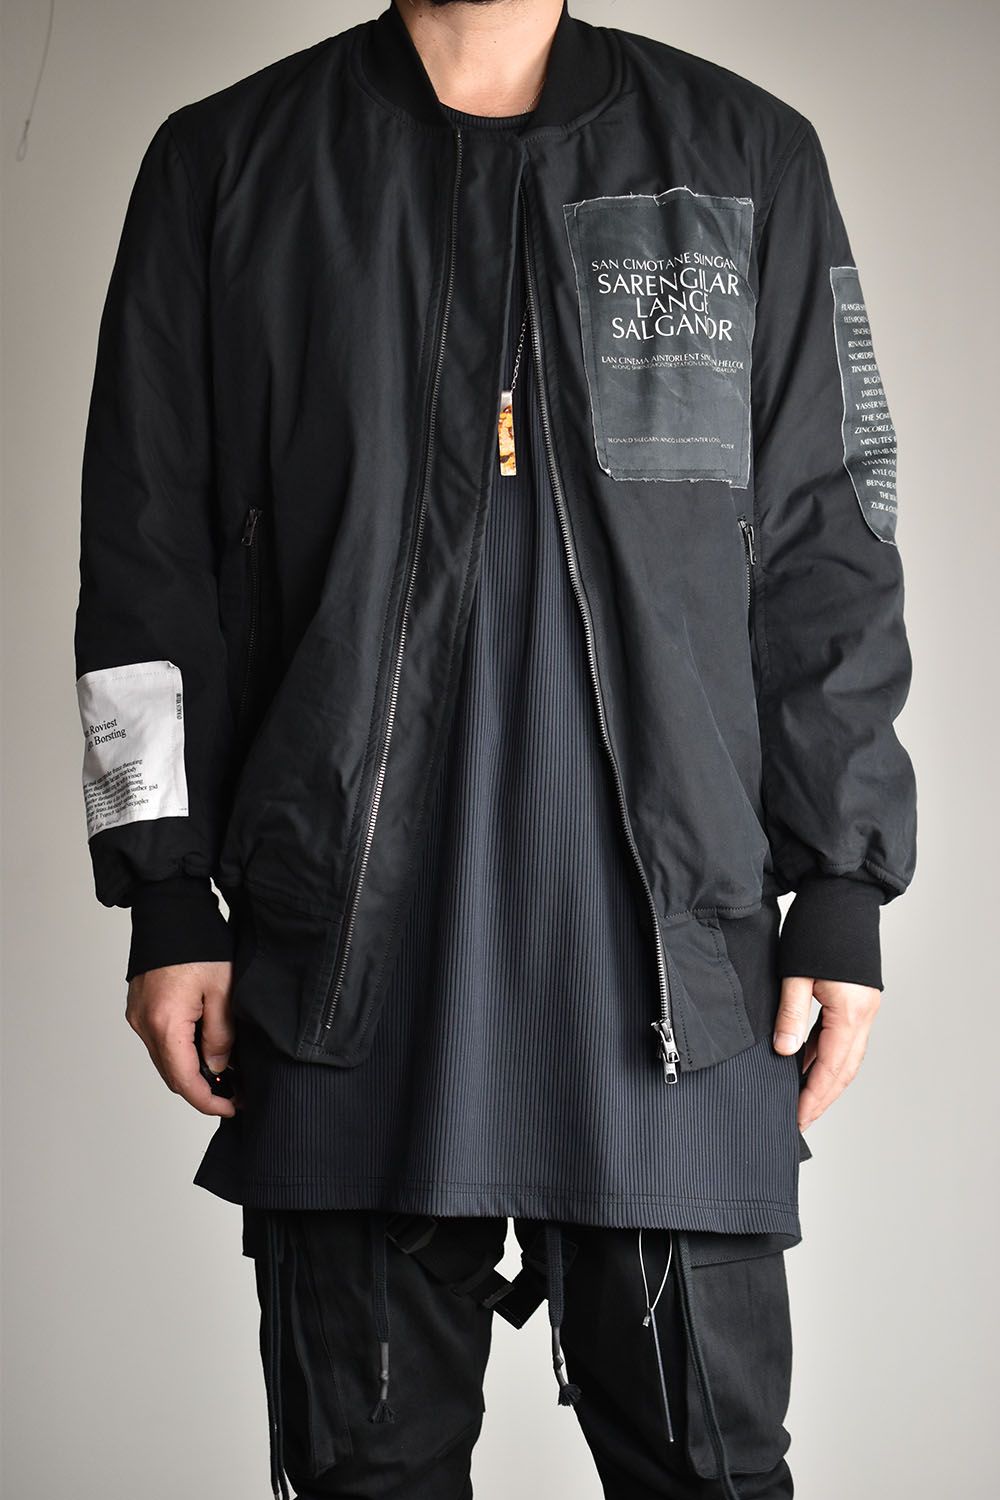 ☆お求めやすく価格改定☆ nairo バックギャザーデザインジャケット